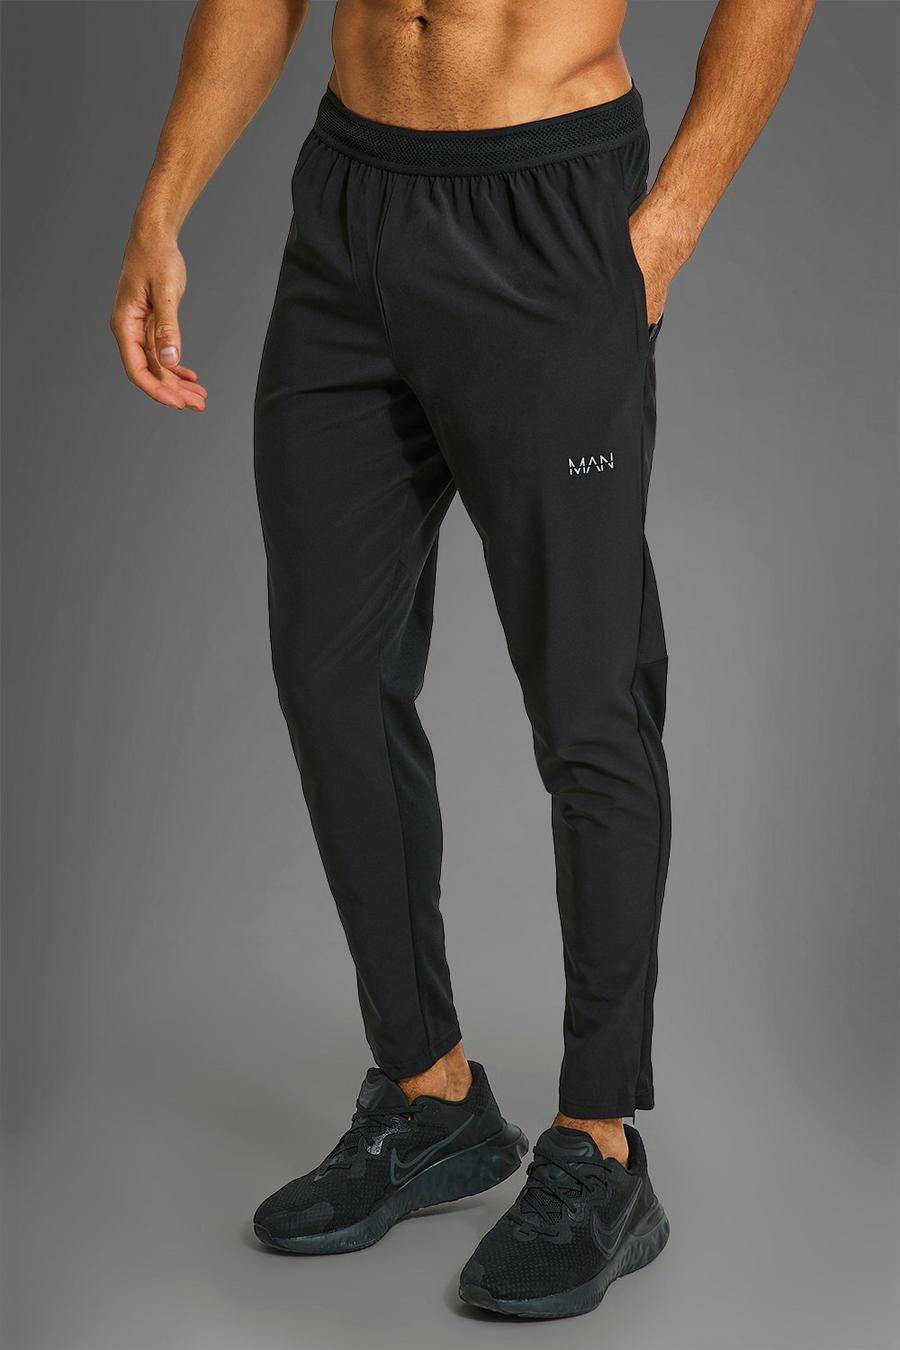 Pantalón deportivo MAN Active deportivo resistente con cremallera en los bolsillos, Black nero